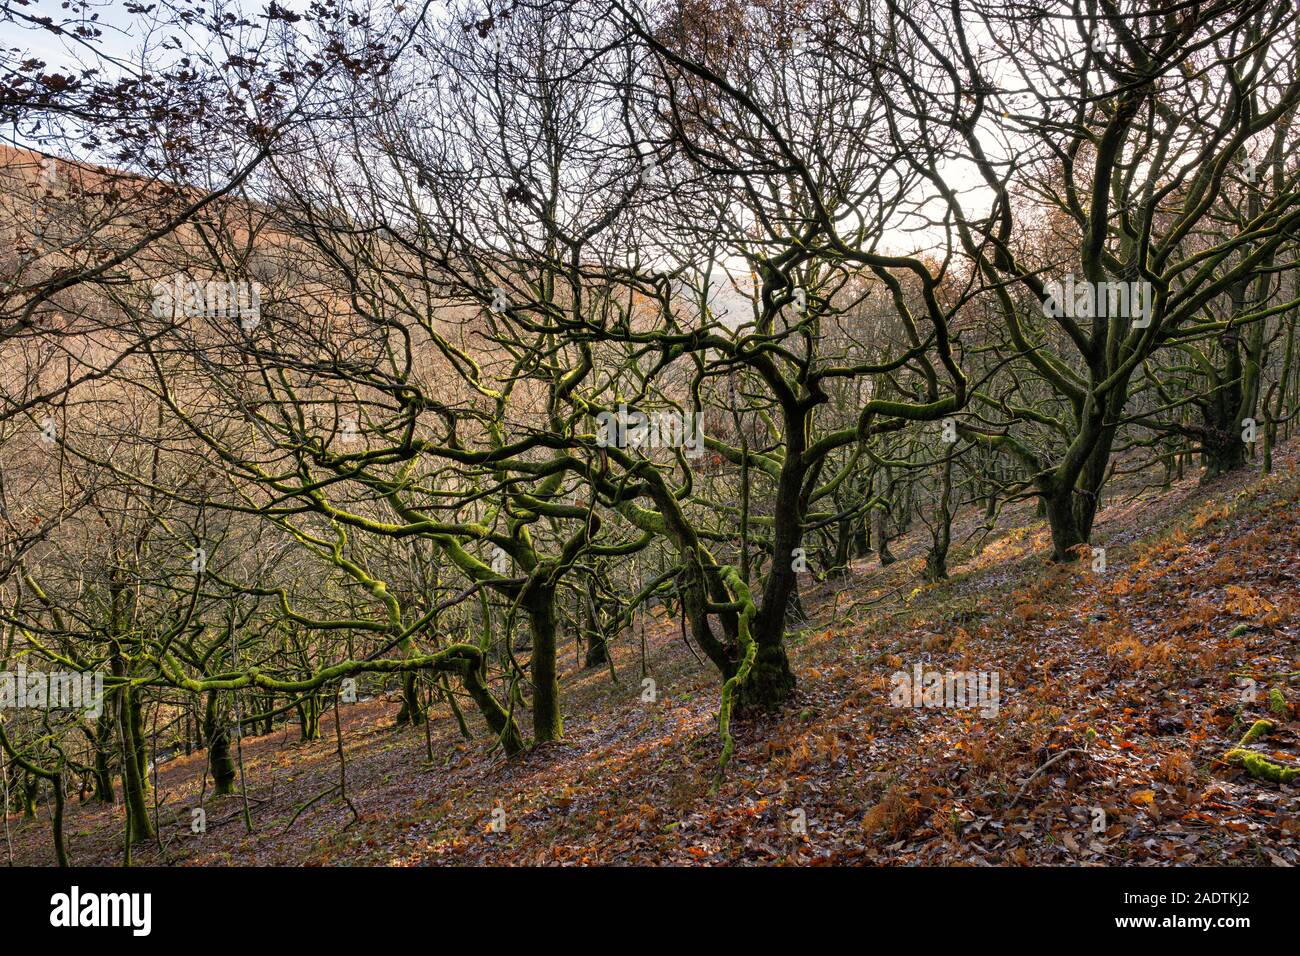 Torcidos árboles que crecen en la ladera de una colina en Gales. Foto de stock